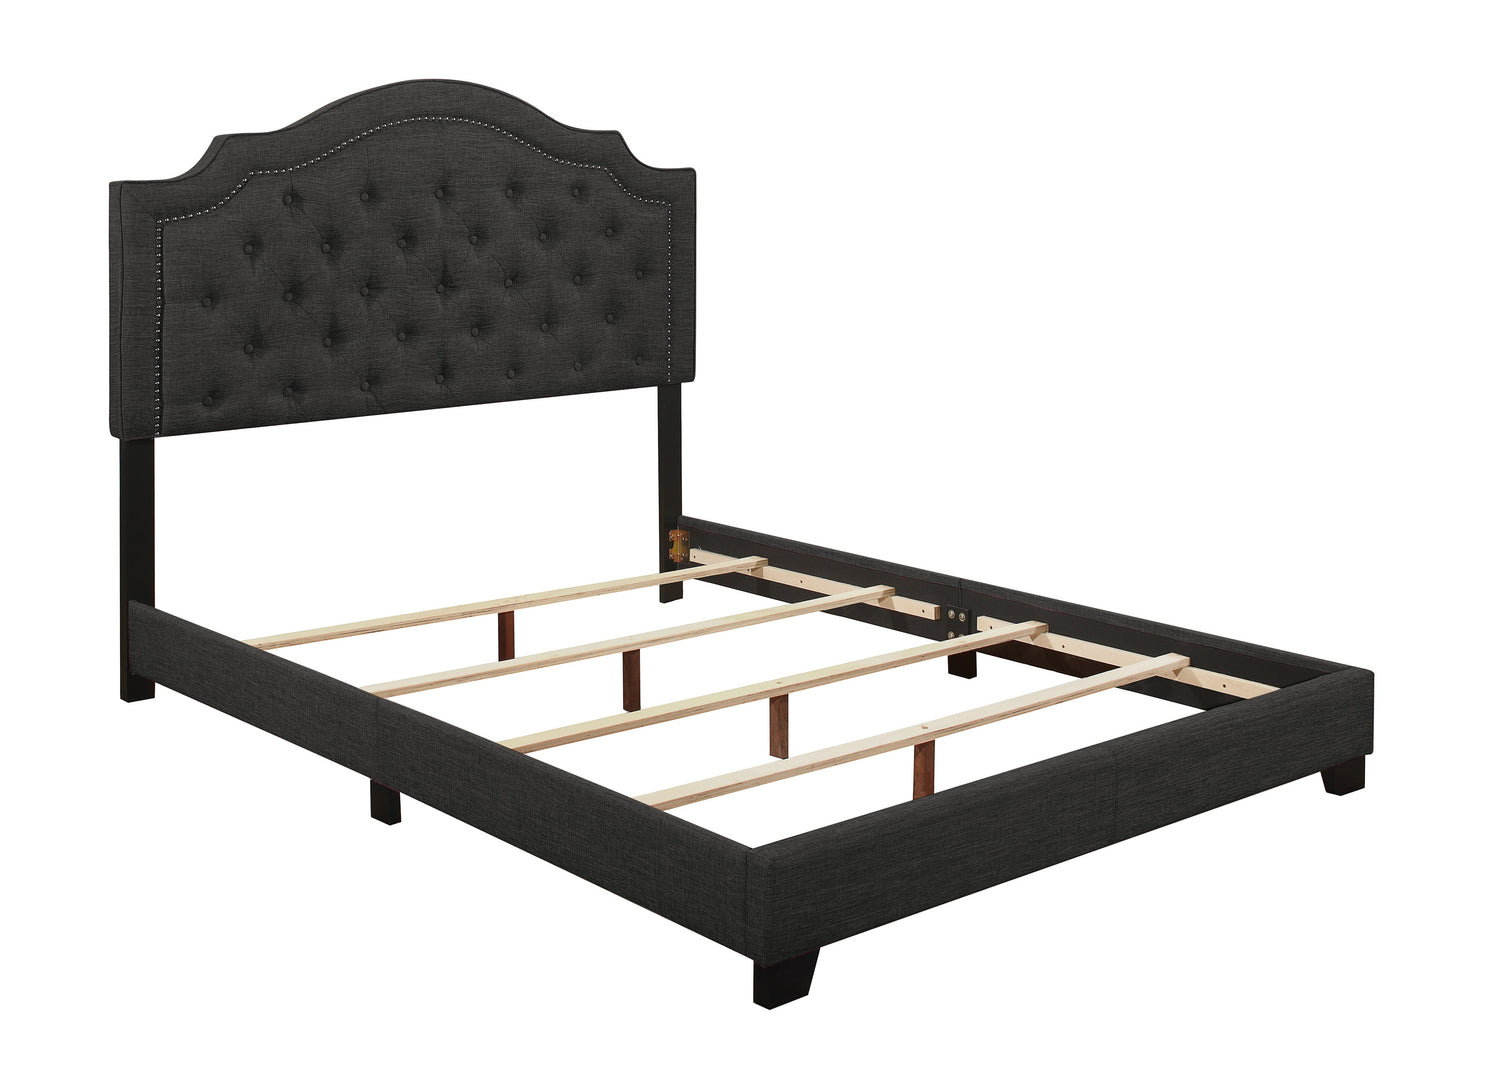 Sandy Dark Gray King Upholstered Bed - SH255KDGR-1 - Bien Home Furniture &amp; Electronics